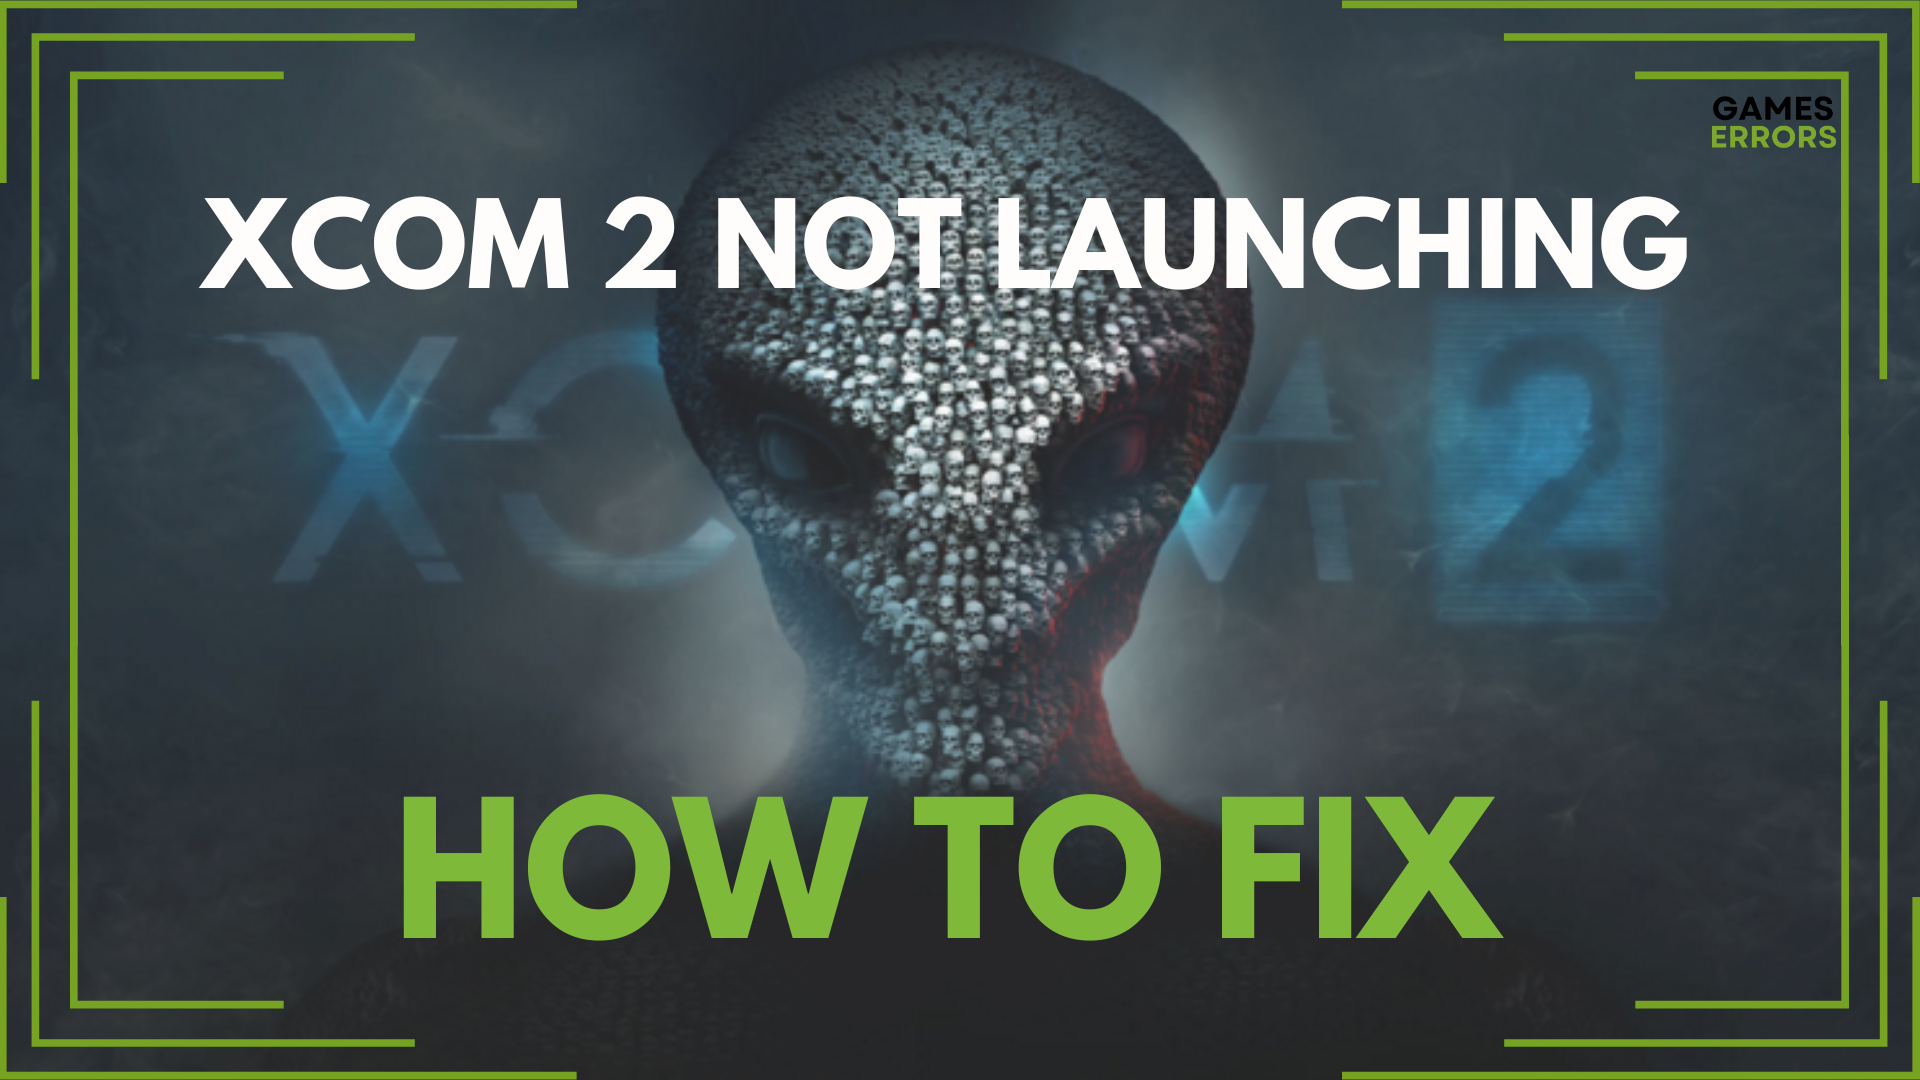 XCOM 2 Not Launching